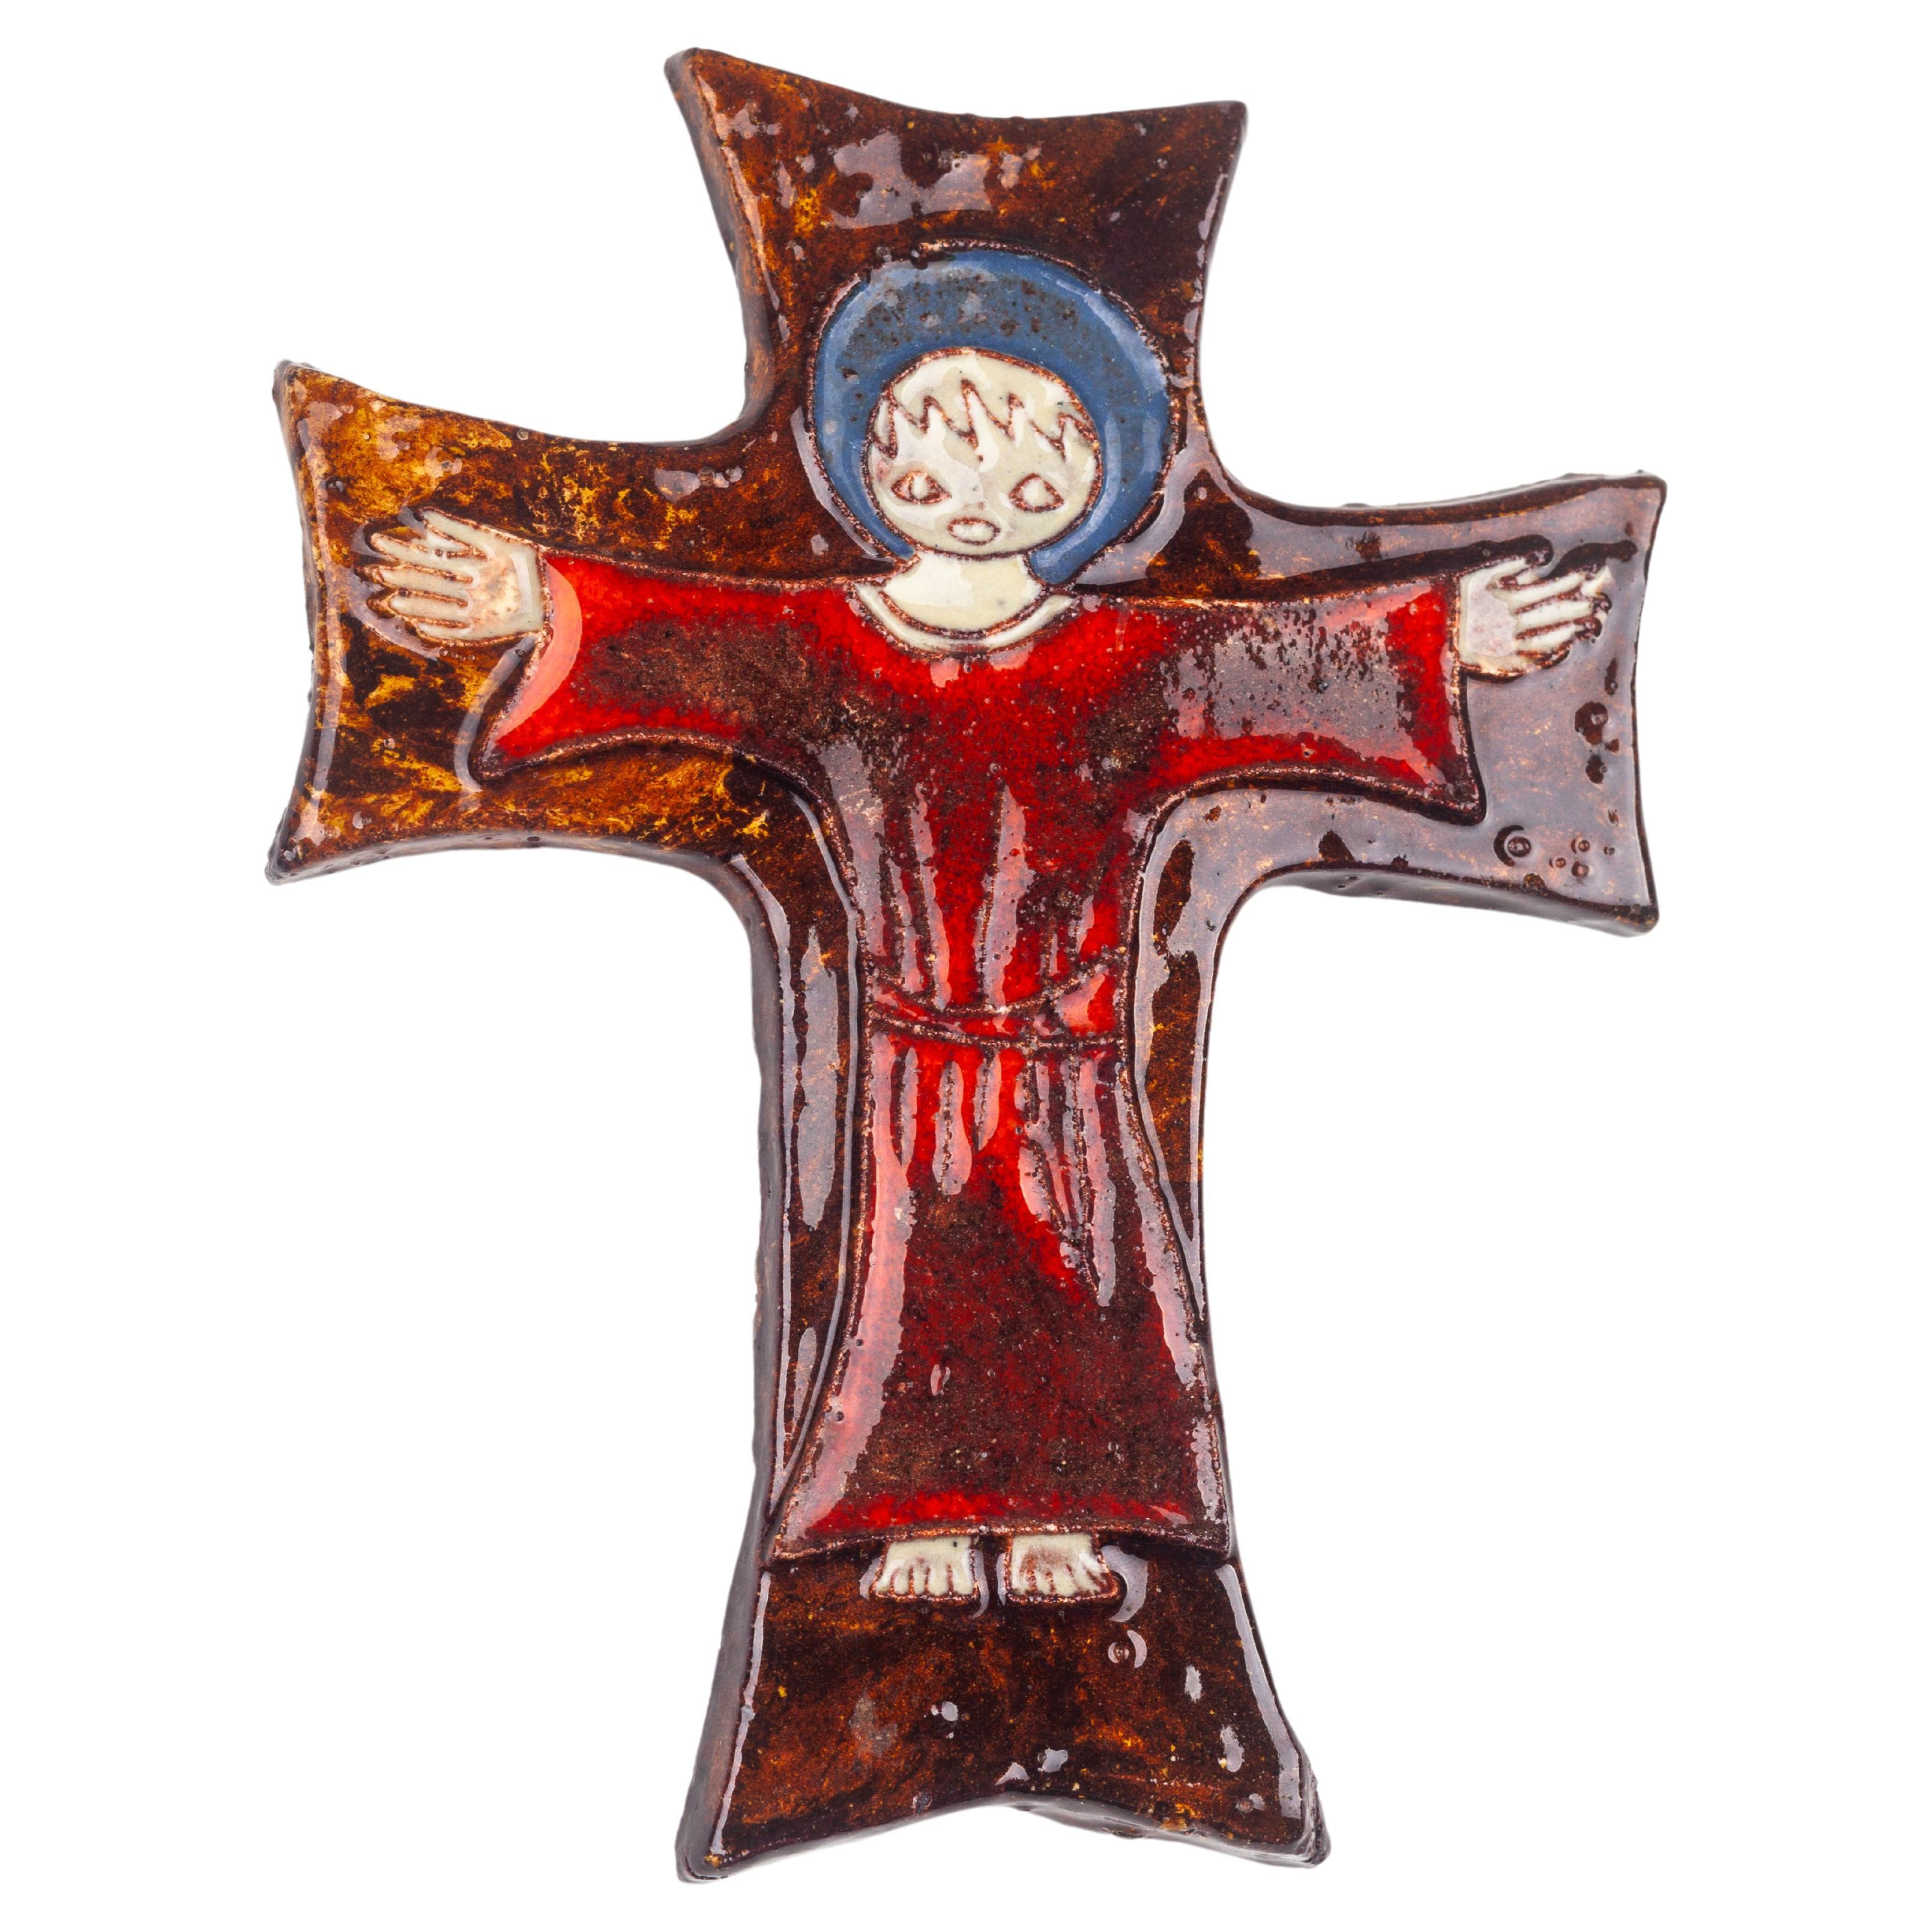 Dieses Keramikkreuz, das von Töpferstudios in der Mitte des Jahrhunderts in Europa handgefertigt wurde, zeigt in seinem Inneren eine stilisierte figurative Szene, die an die reiche Tradition religiöser Kunst erinnert und durch die Linse des modernen